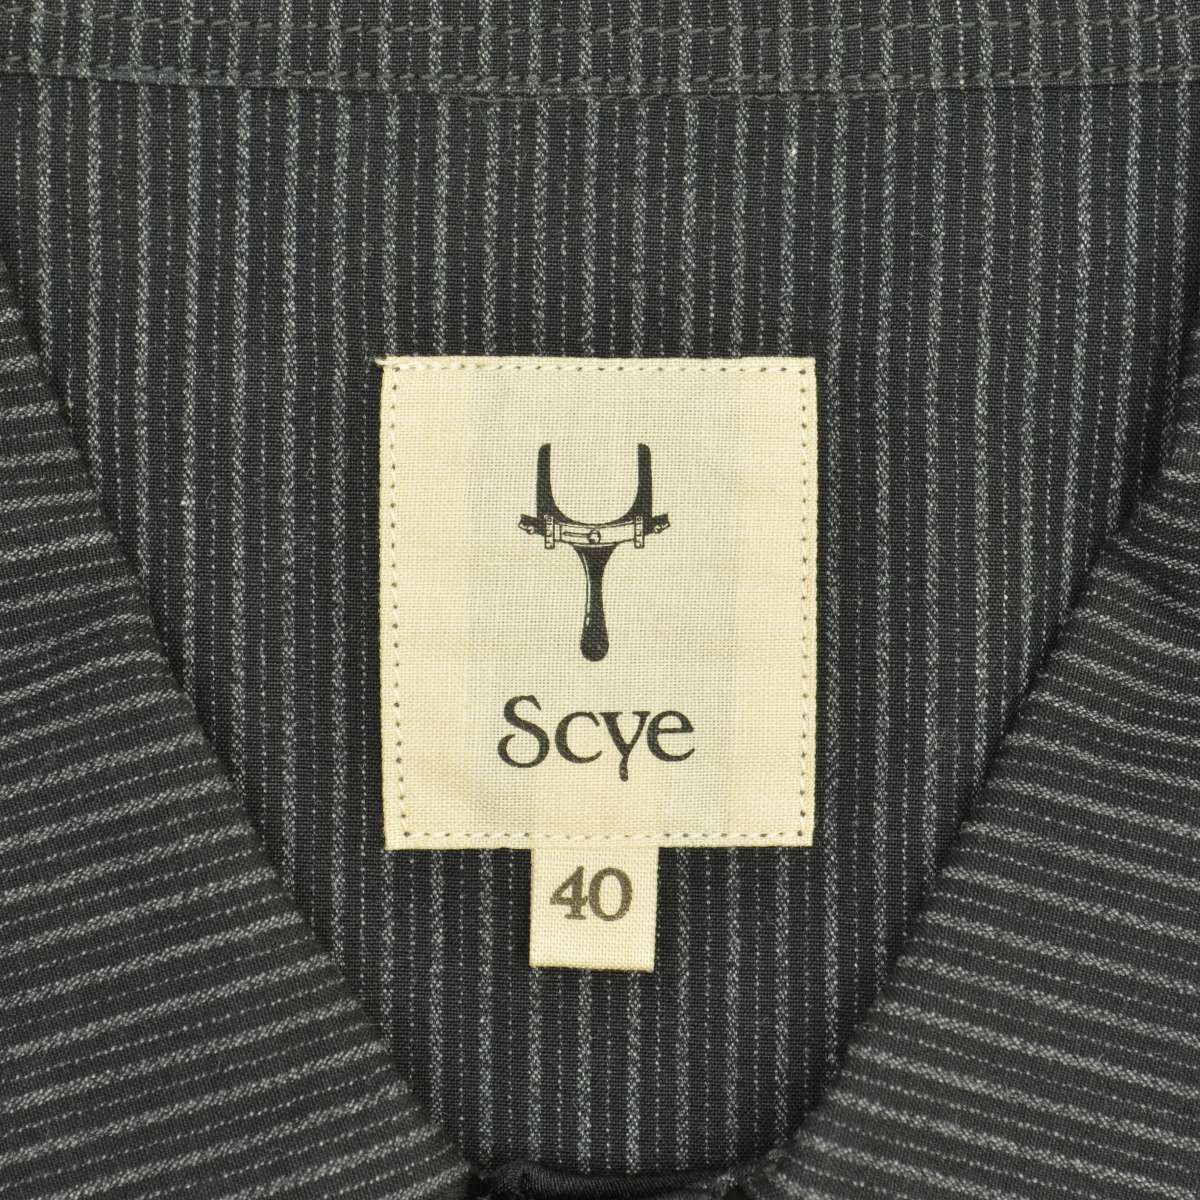 40【Scye】1109-31069 ストライプパジャマ長袖シャツ